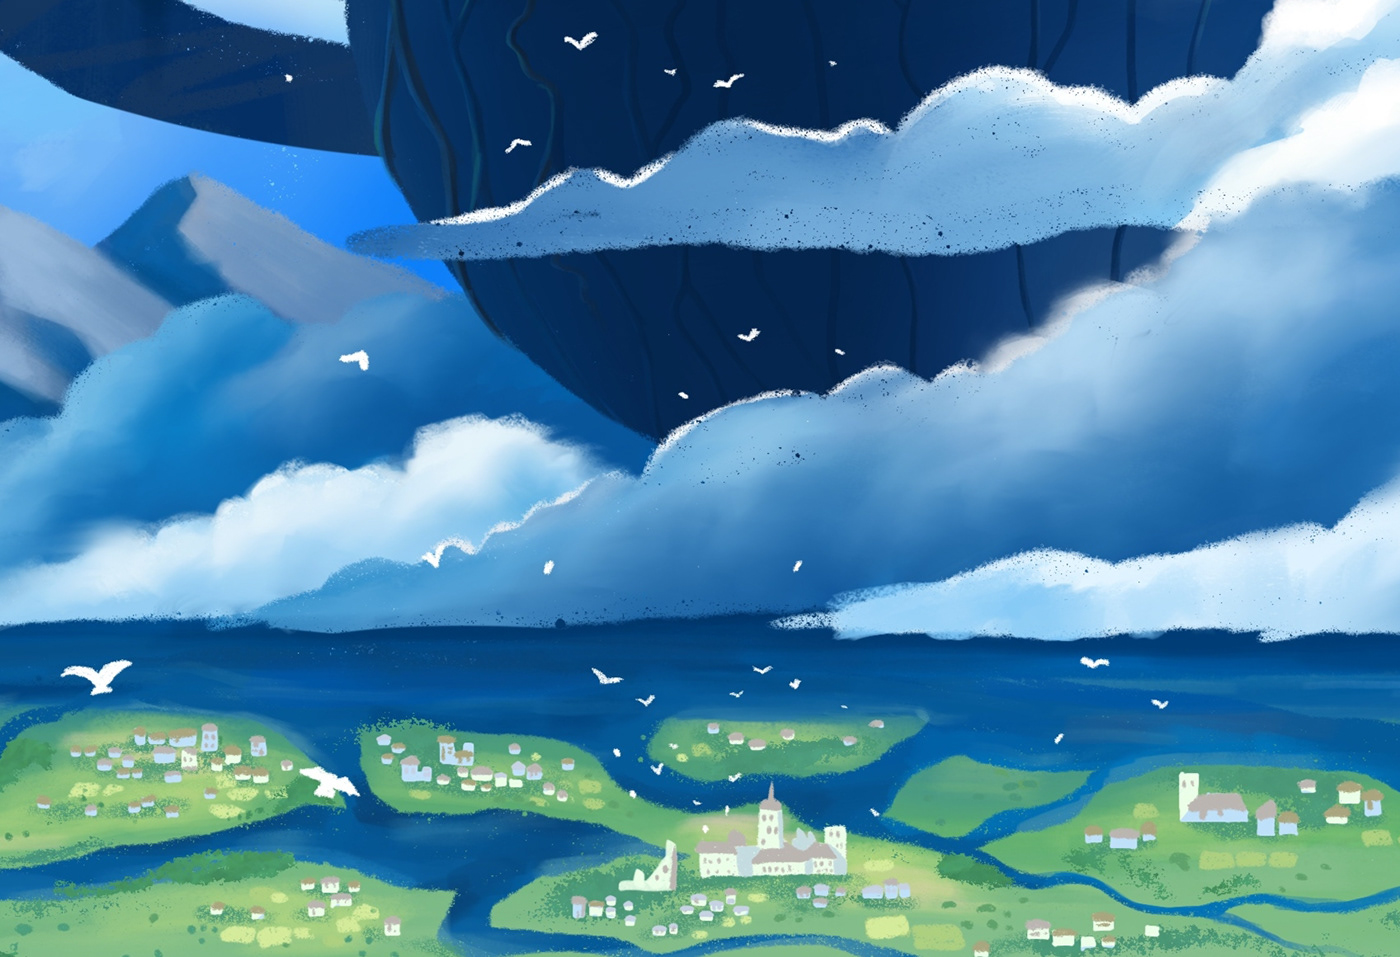 Ghibli Digital Art  art castle in the sky ghibliartwork